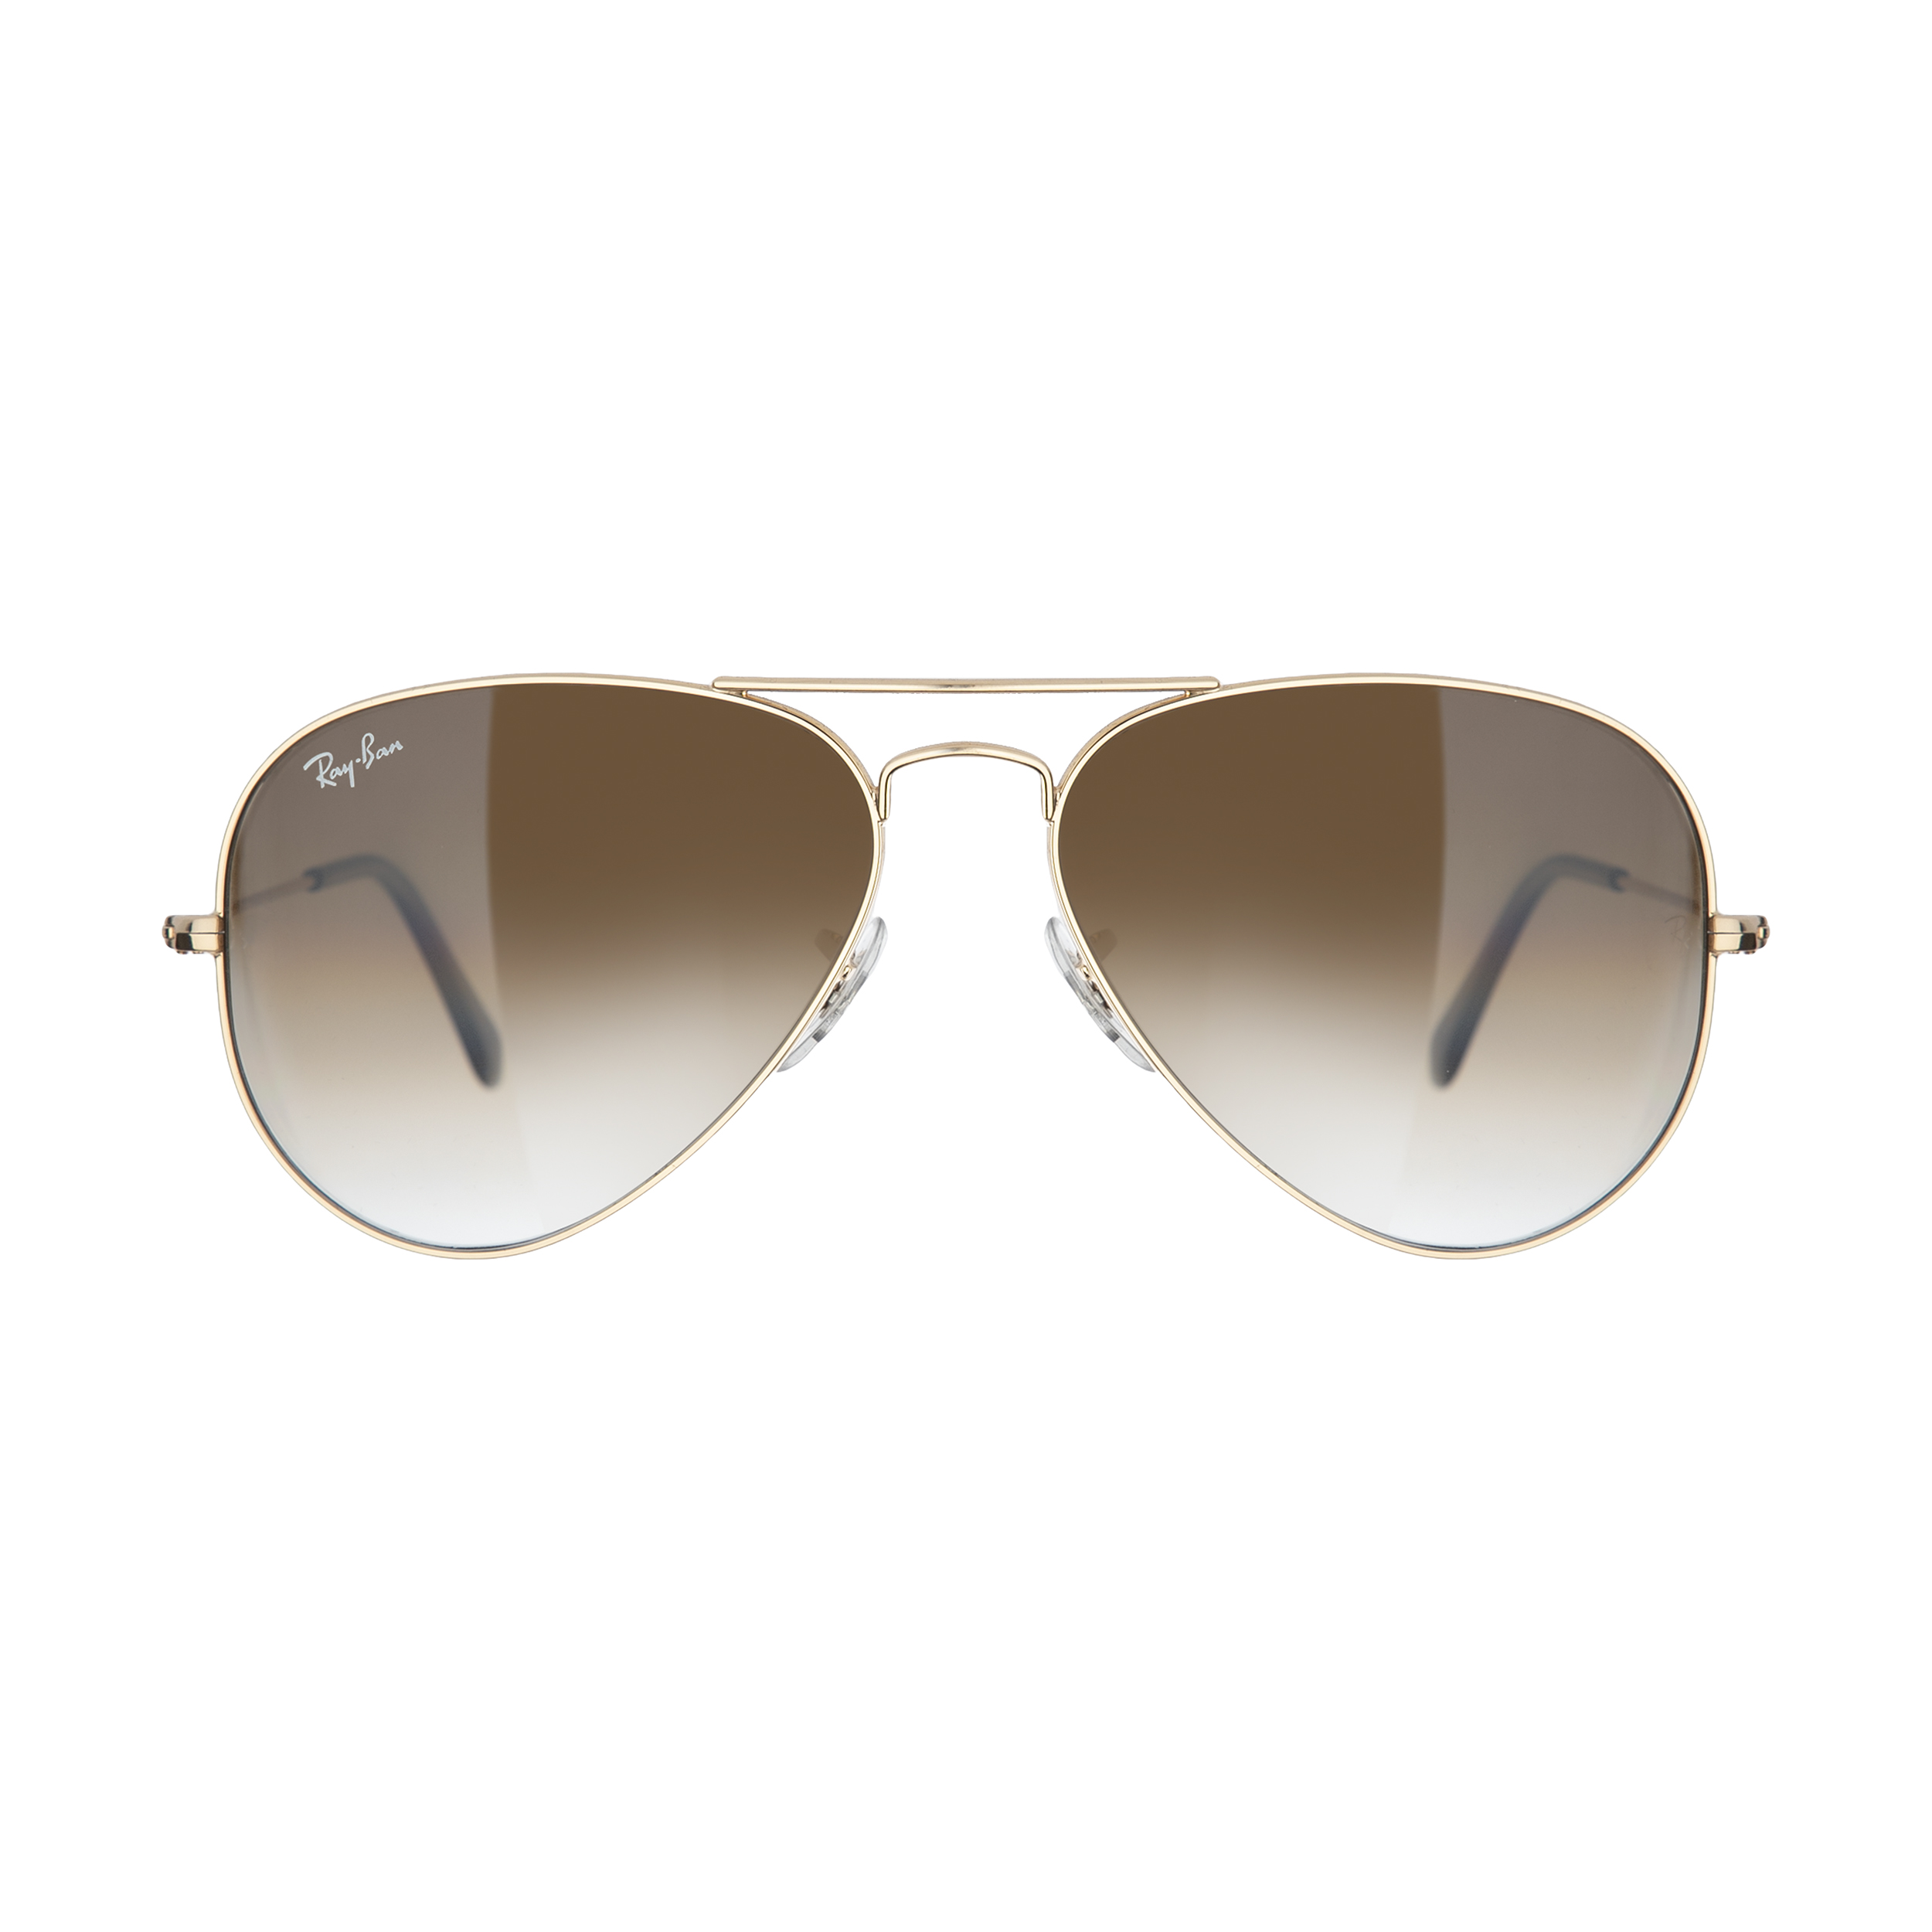 عینک آفتابی ری بن مدل 001/51-58 -  - 2